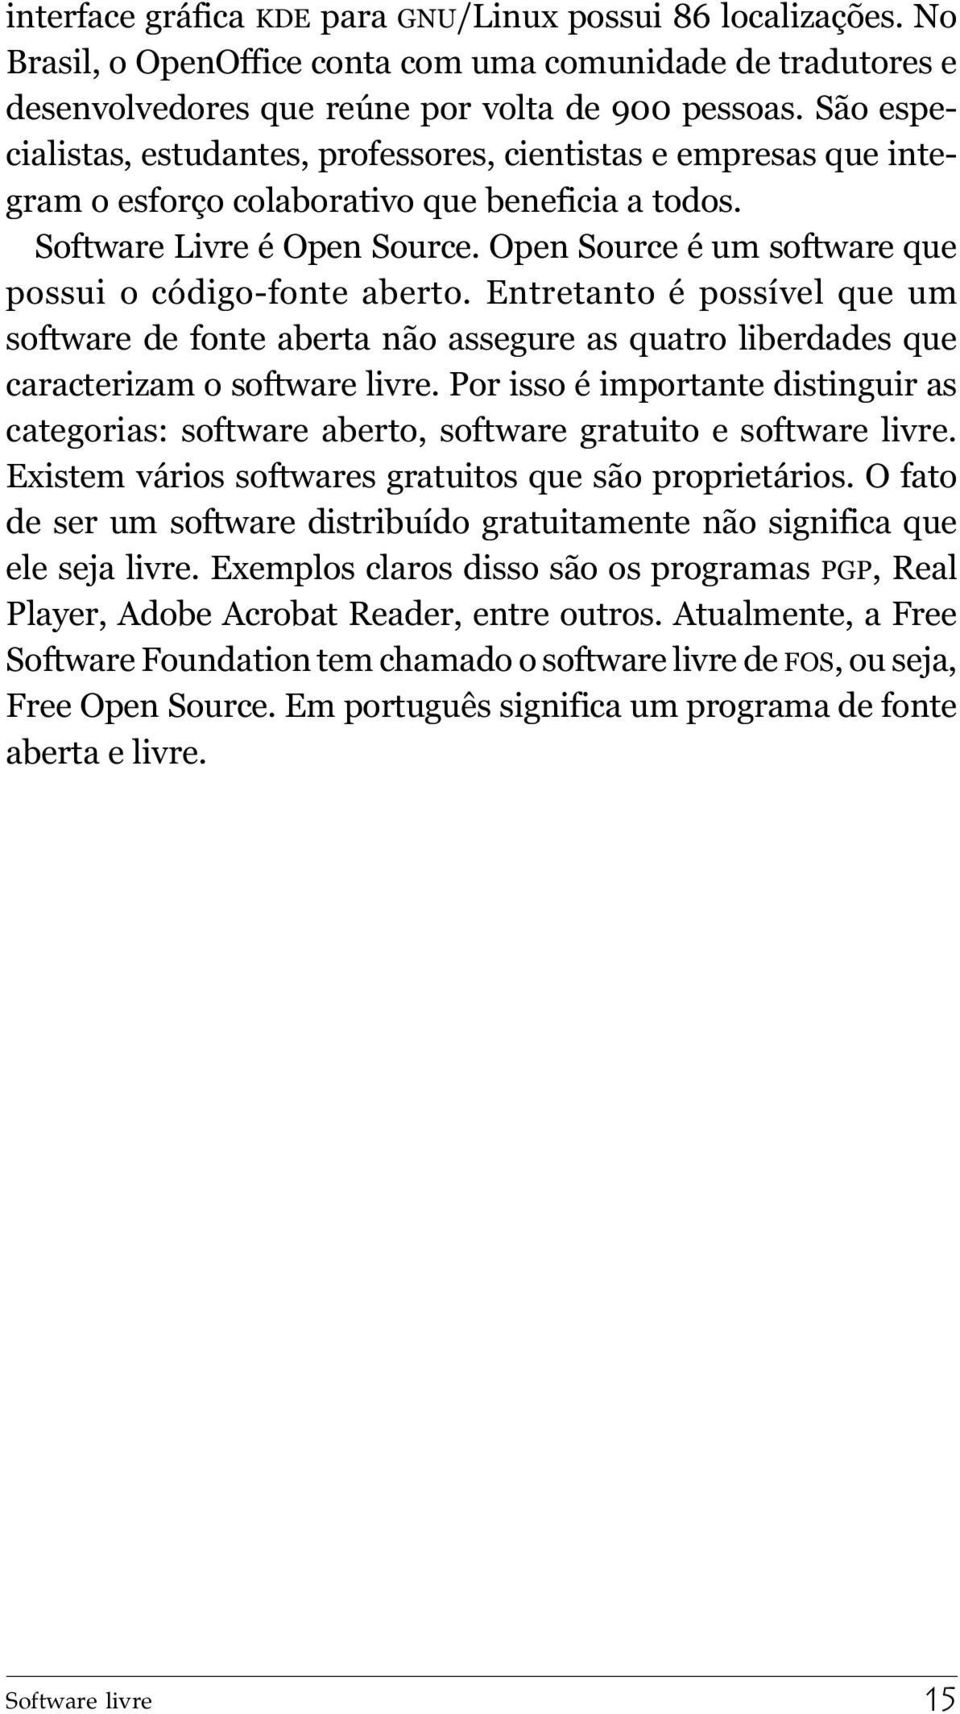 Open Source é um software que possui o código-fonte aberto. Entretanto é possível que um software de fonte aberta não assegure as quatro liberdades que caracterizam o software livre.